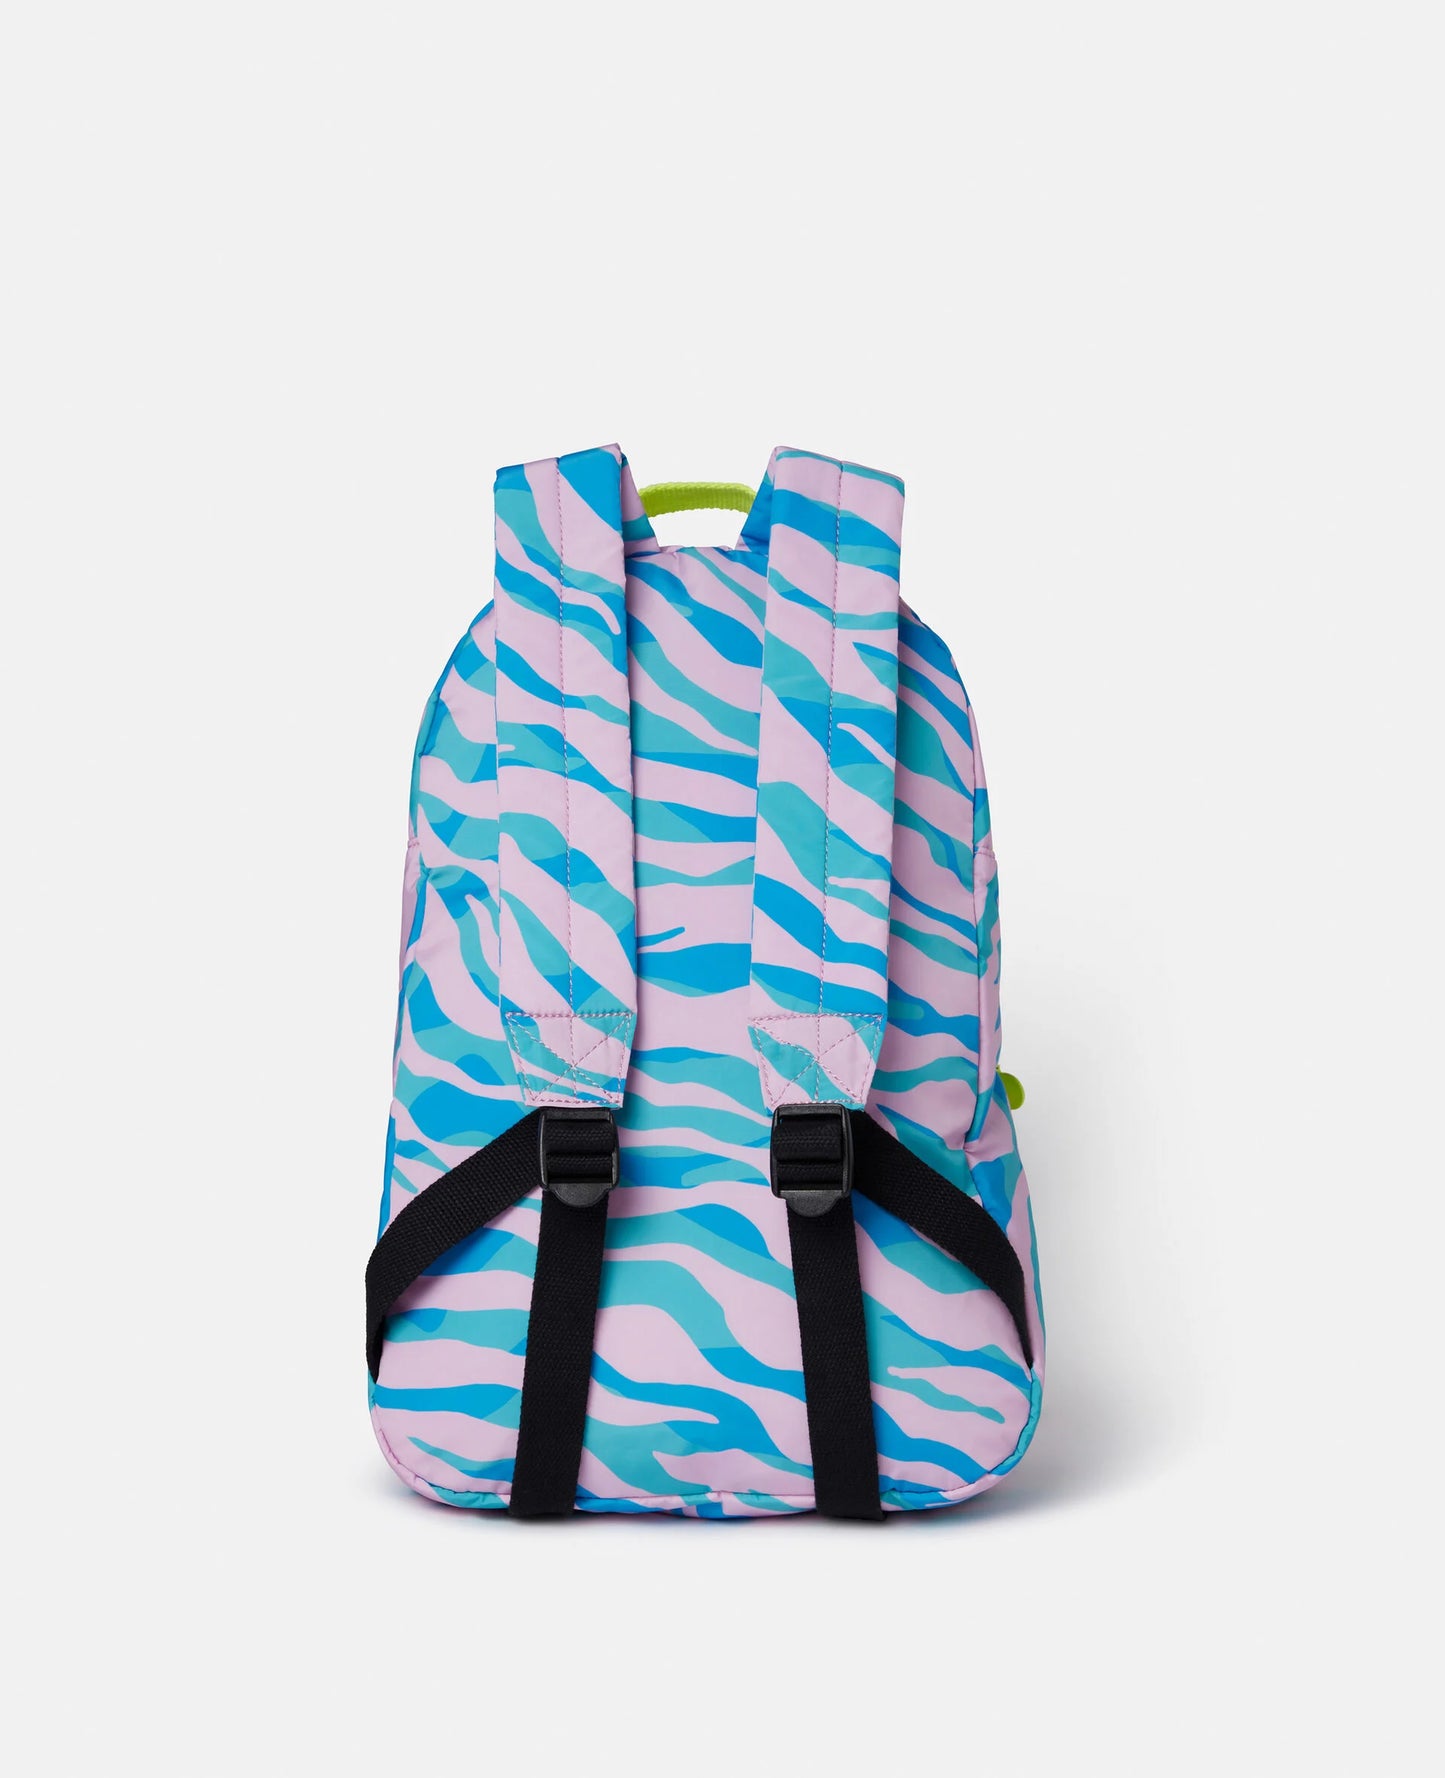 Zebra Print Backpack